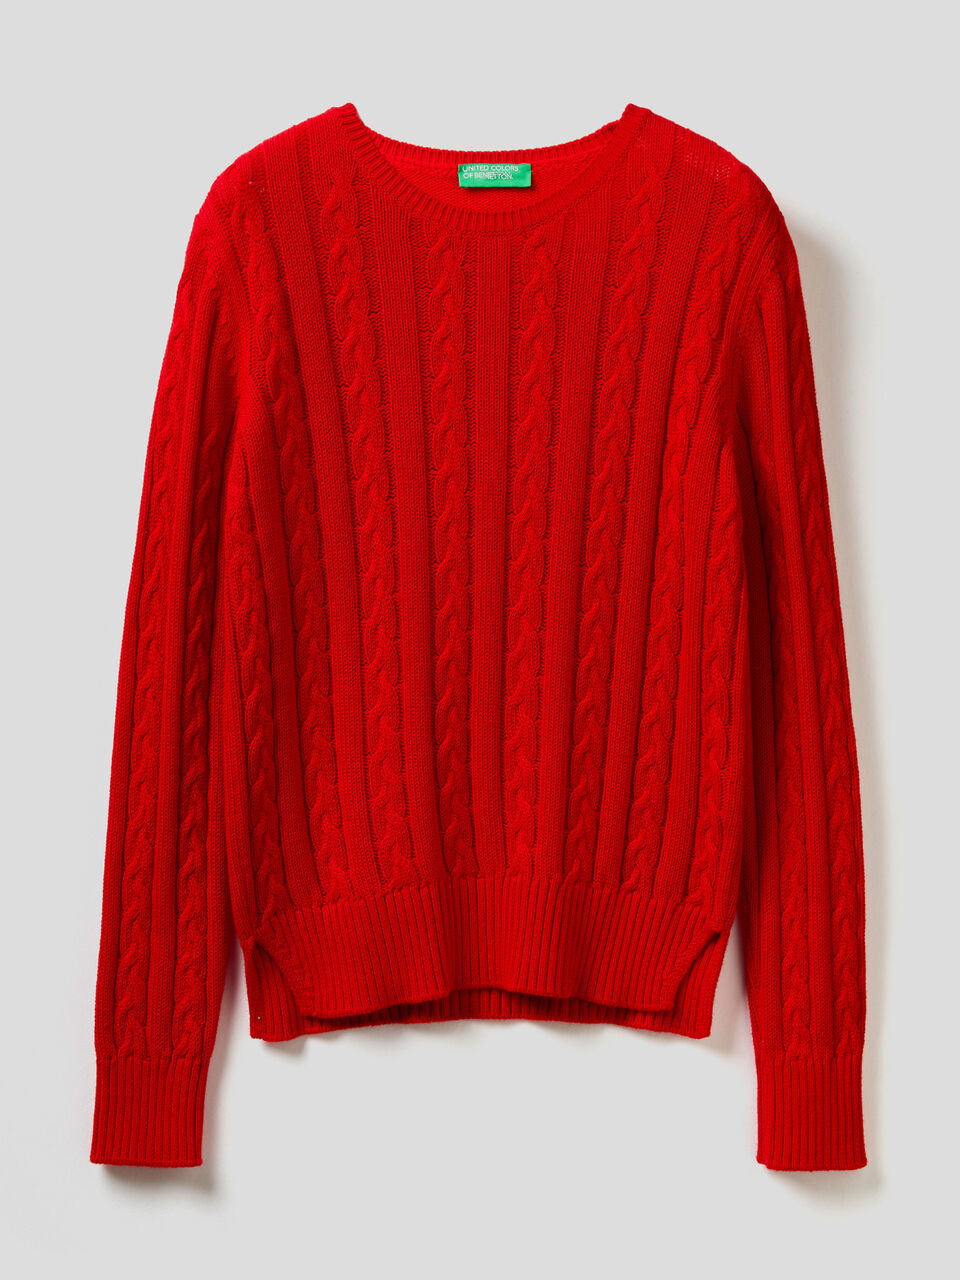 Cotton bolero jumper Color red - SINSAY - WK164-33X